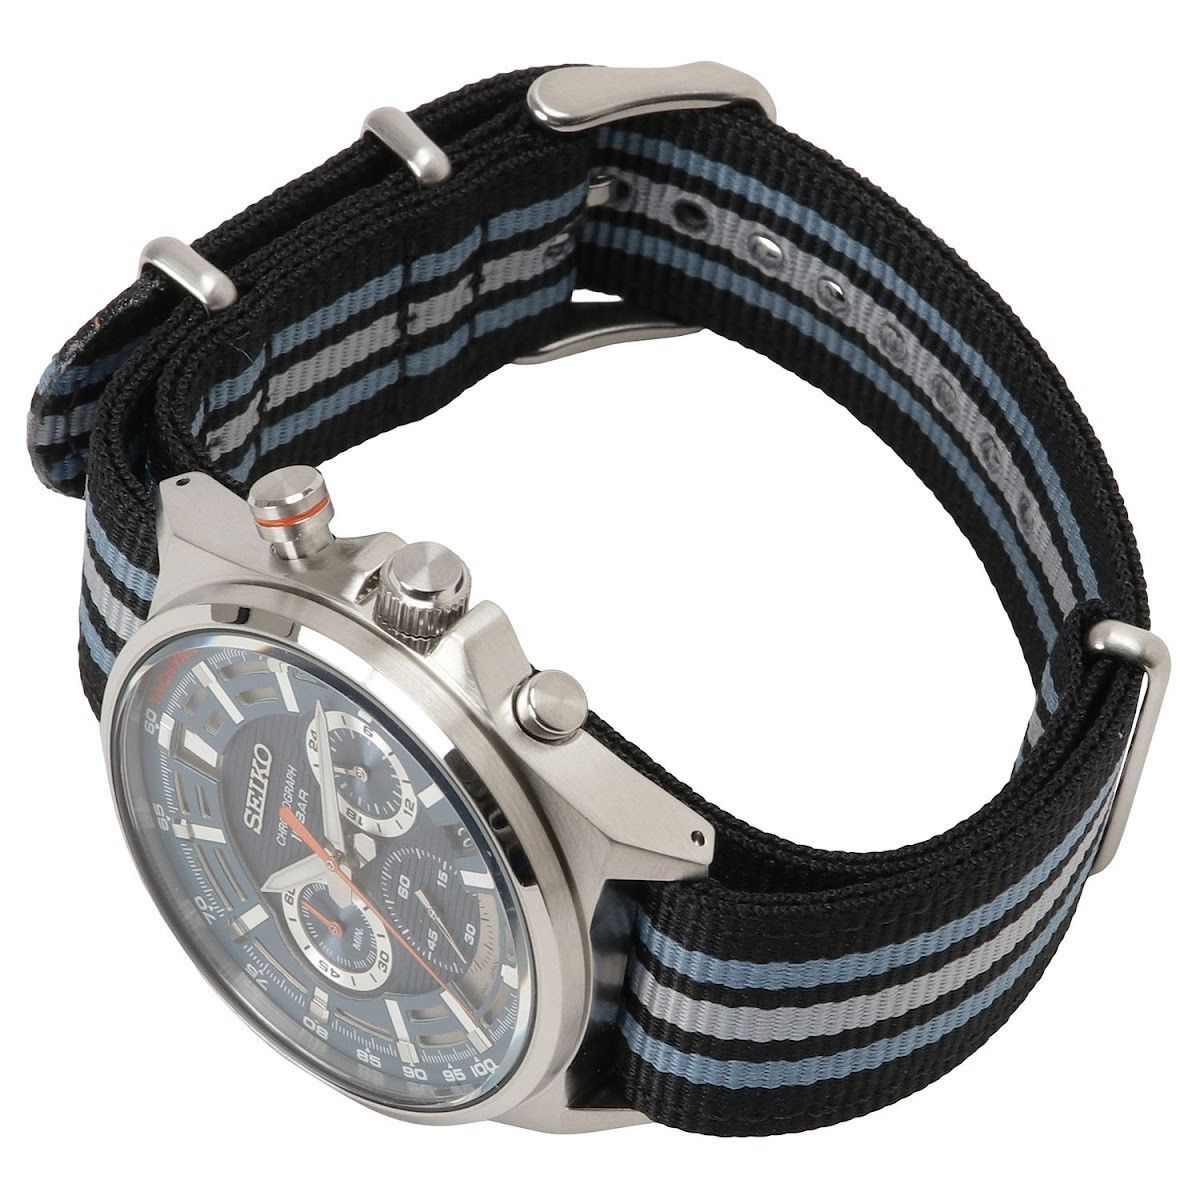 SEIKO セイコー SSB409P1 クロノグラフ アナログ ウォッチ 腕時計 クォーツ 電池式 メンズ ホワイト ブルー ブラック